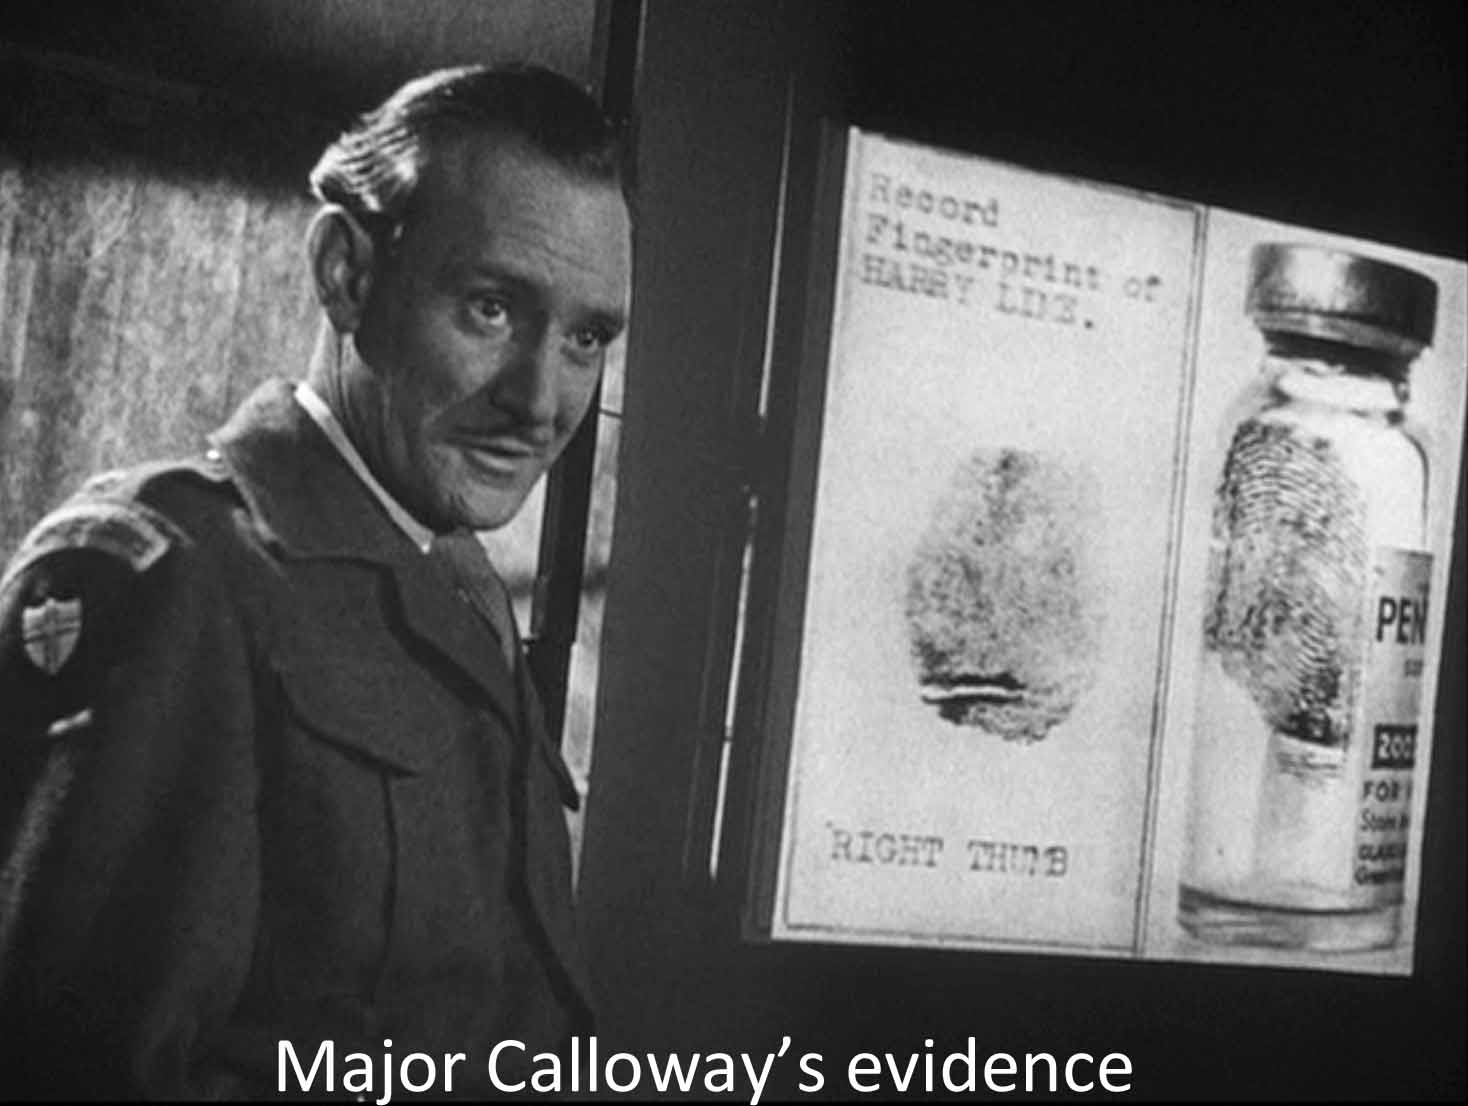 Calloway's evidence